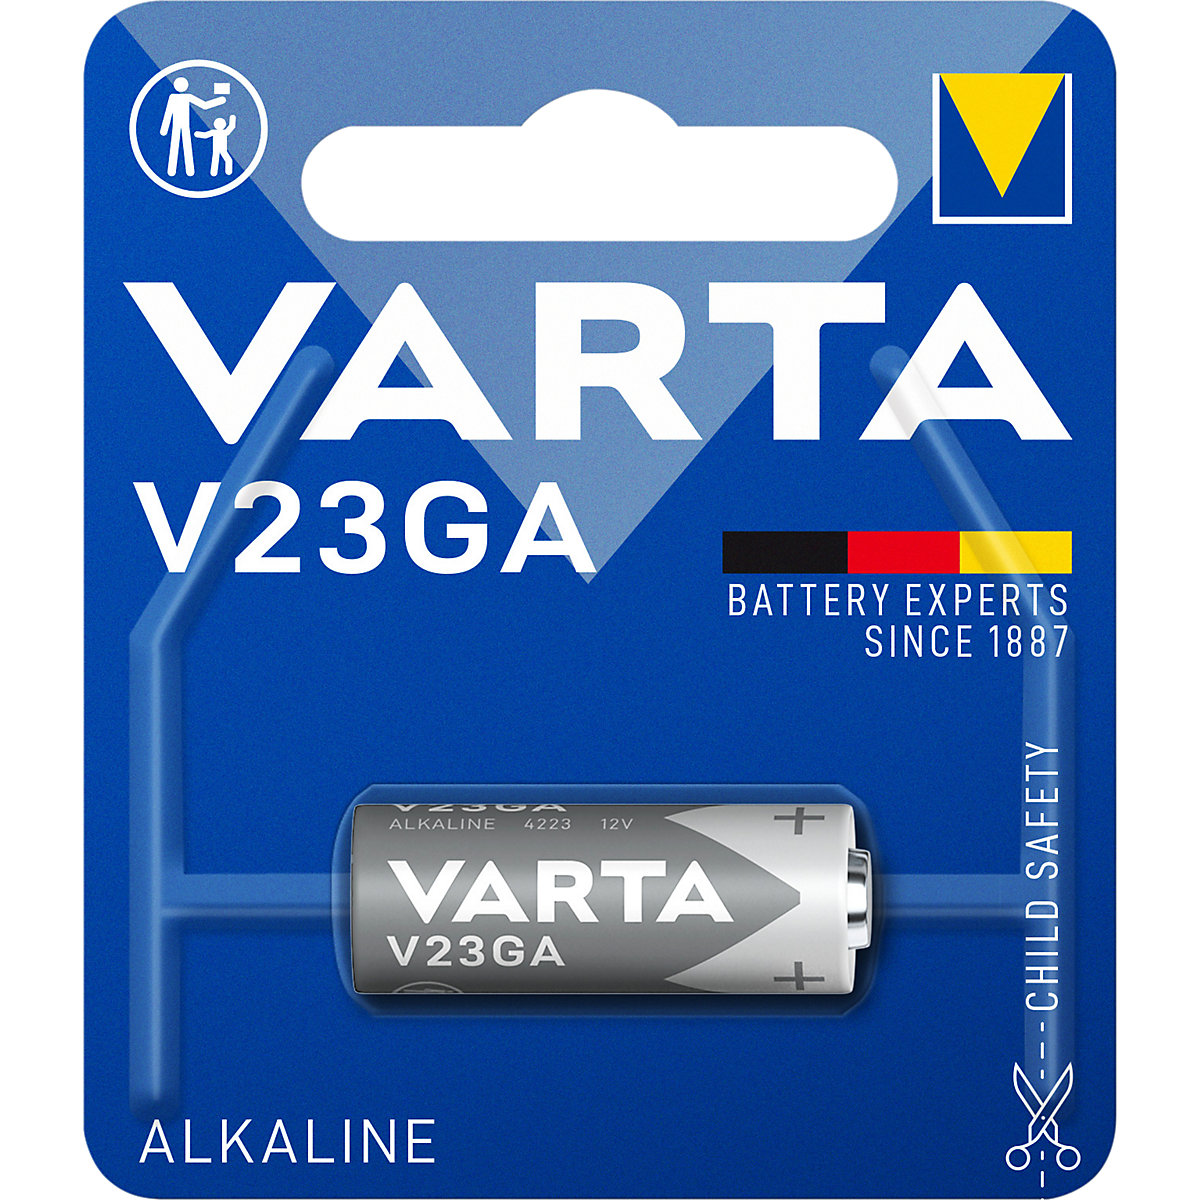 ALKALINE special battery – VARTA: V23GA